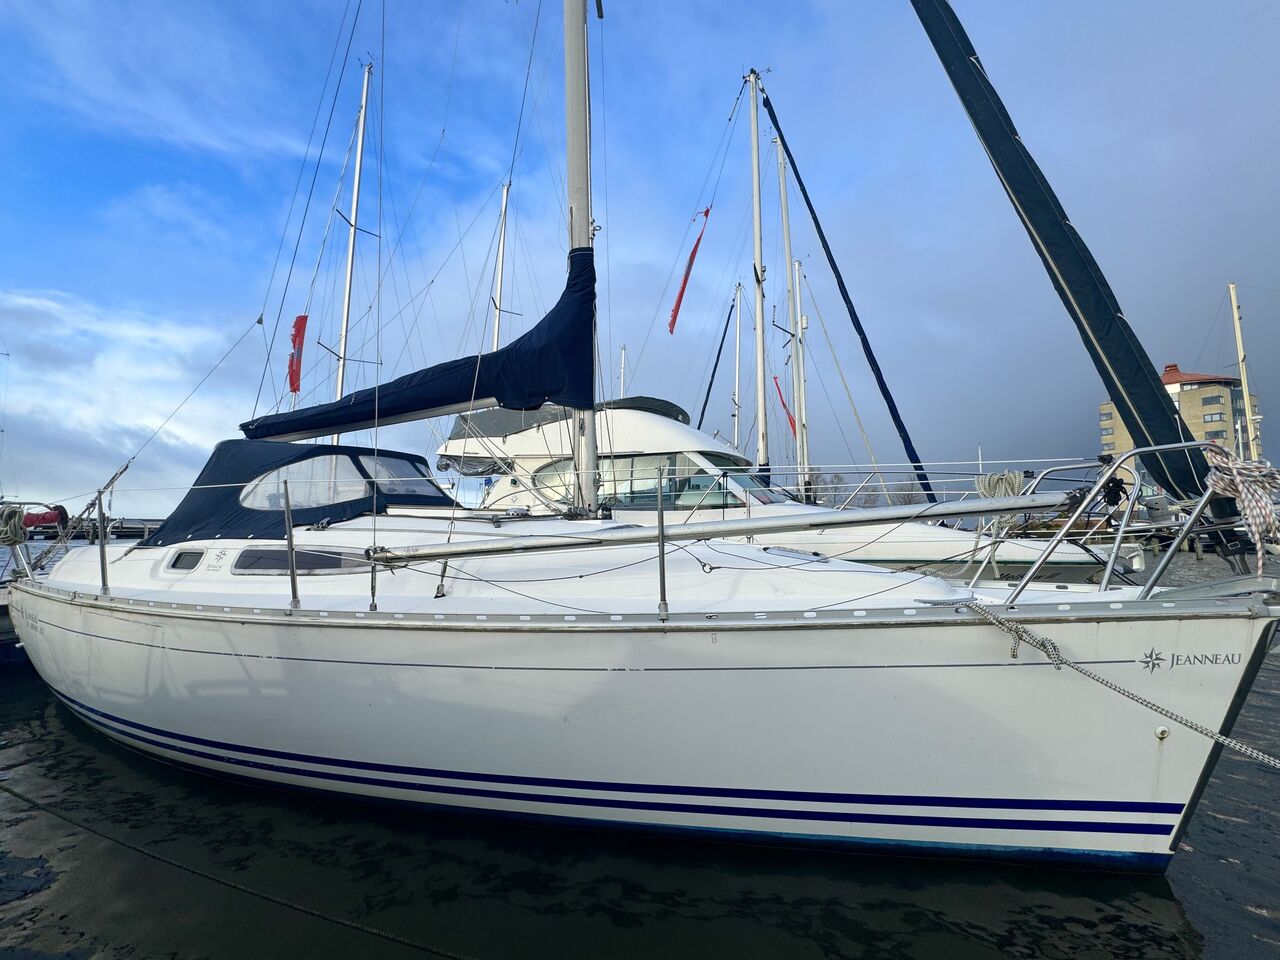 Jeanneau Sun Odyssey 29.2 (sailboat) for sale